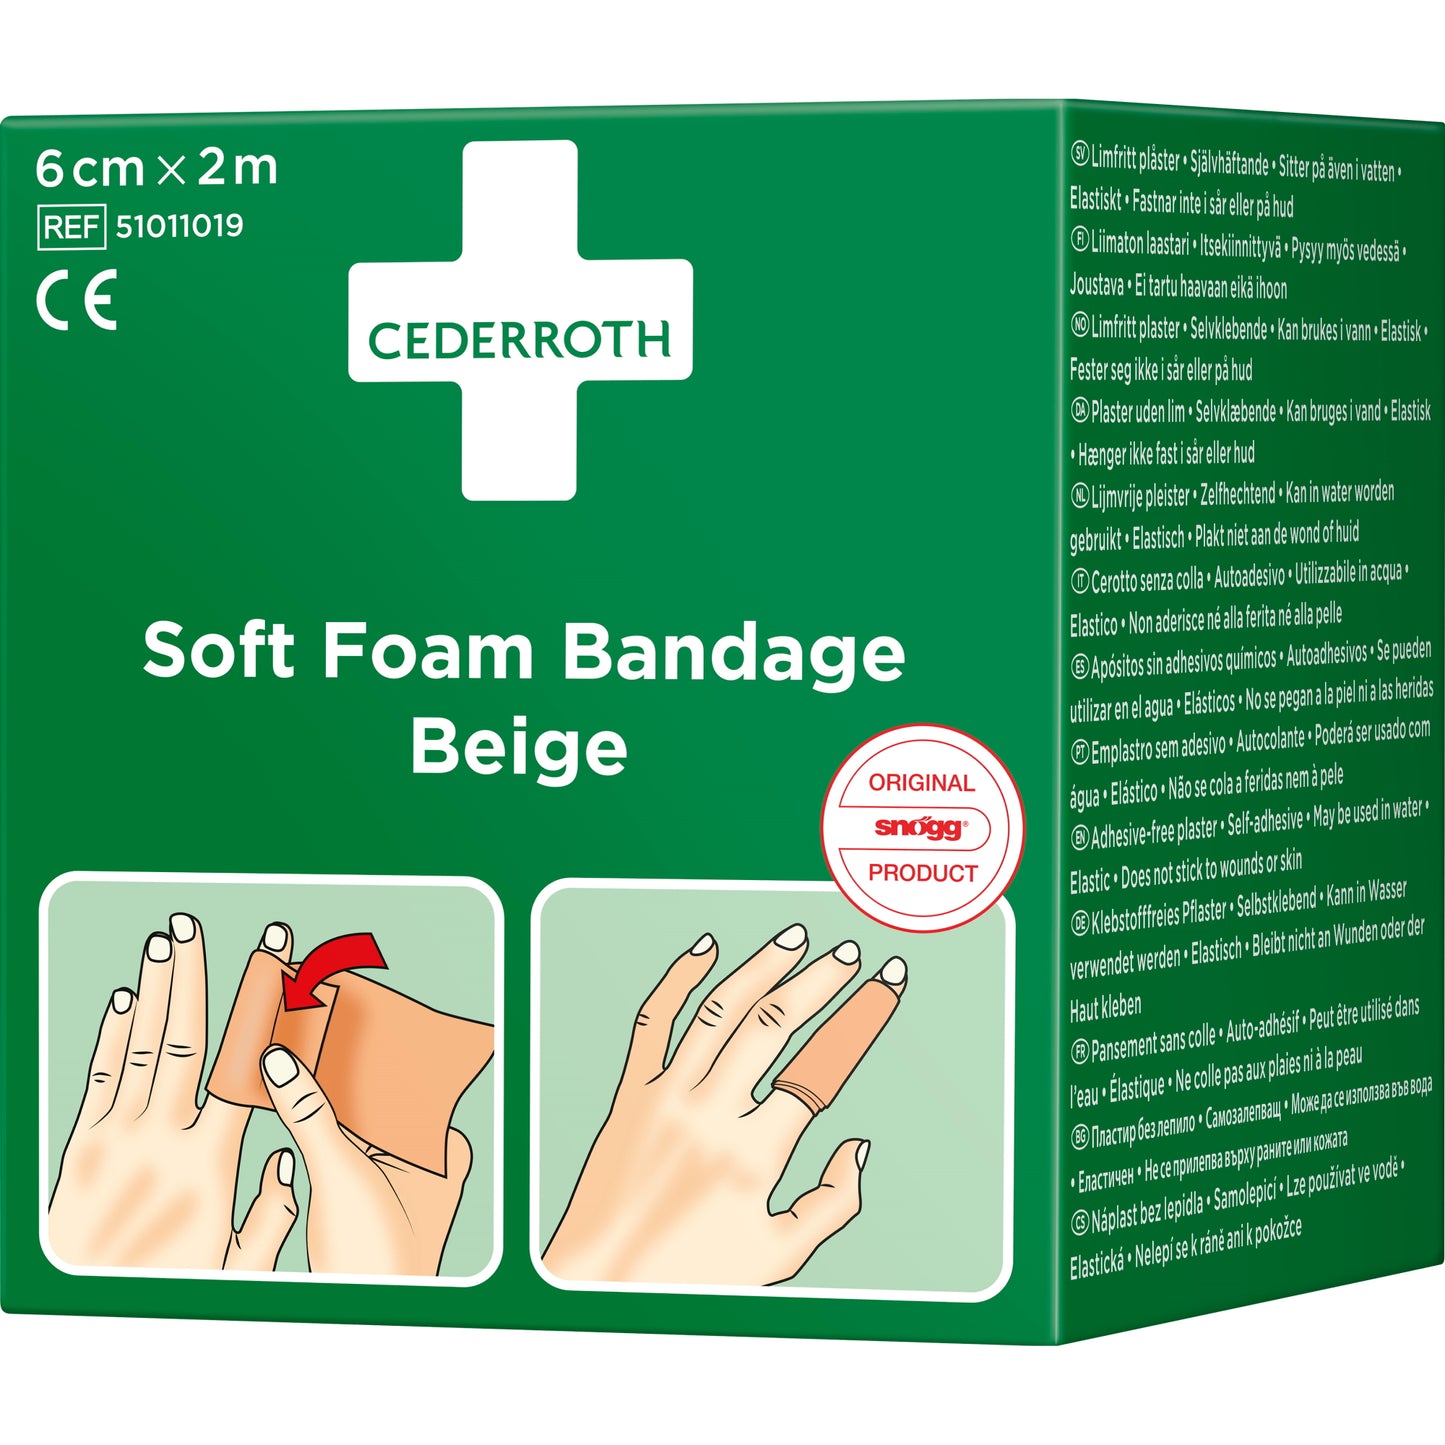 Soft Foam Bandage Beige 6 cm x 2 m